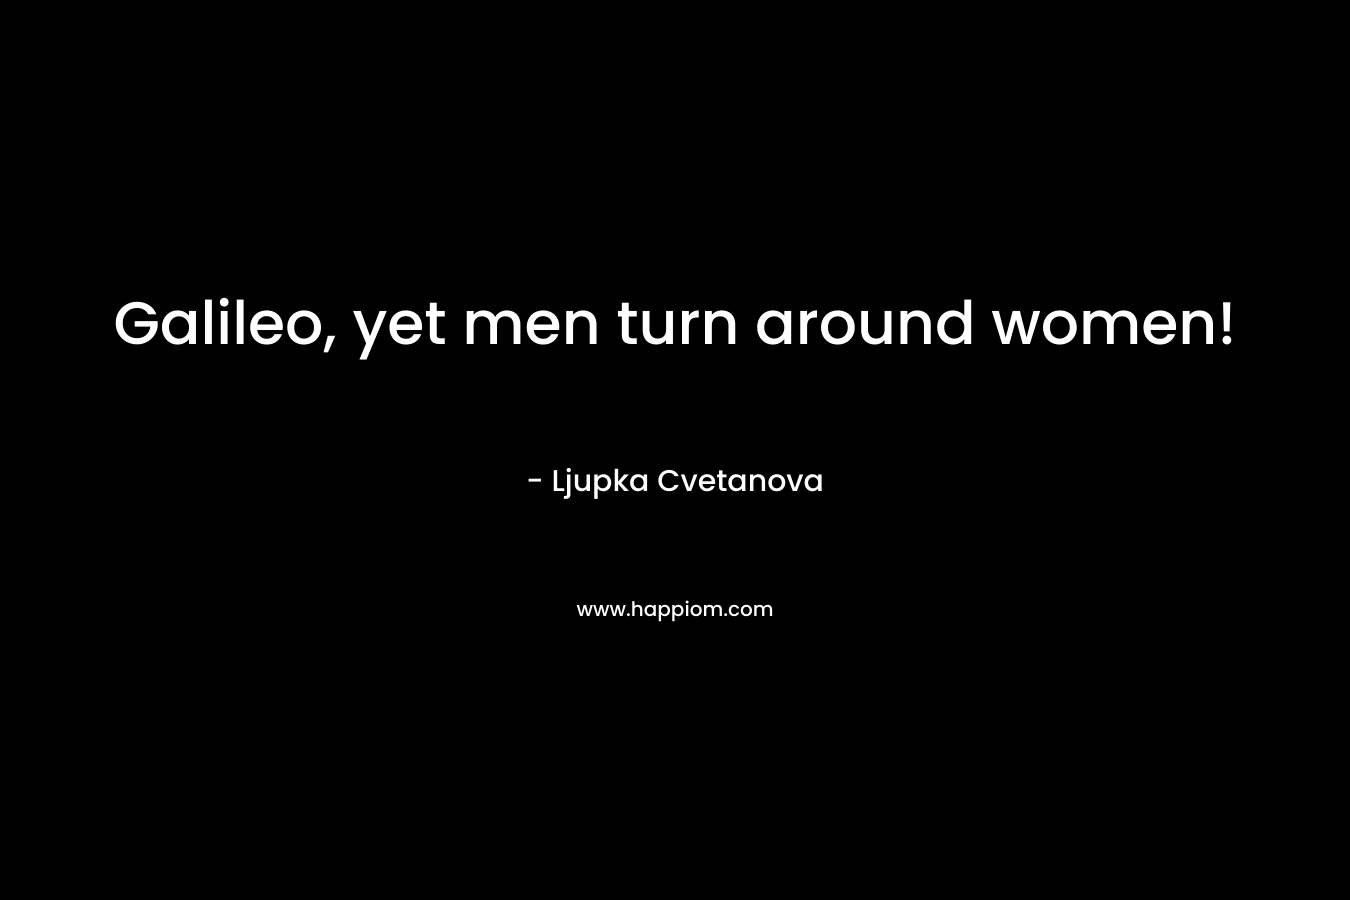 Galileo, yet men turn around women!